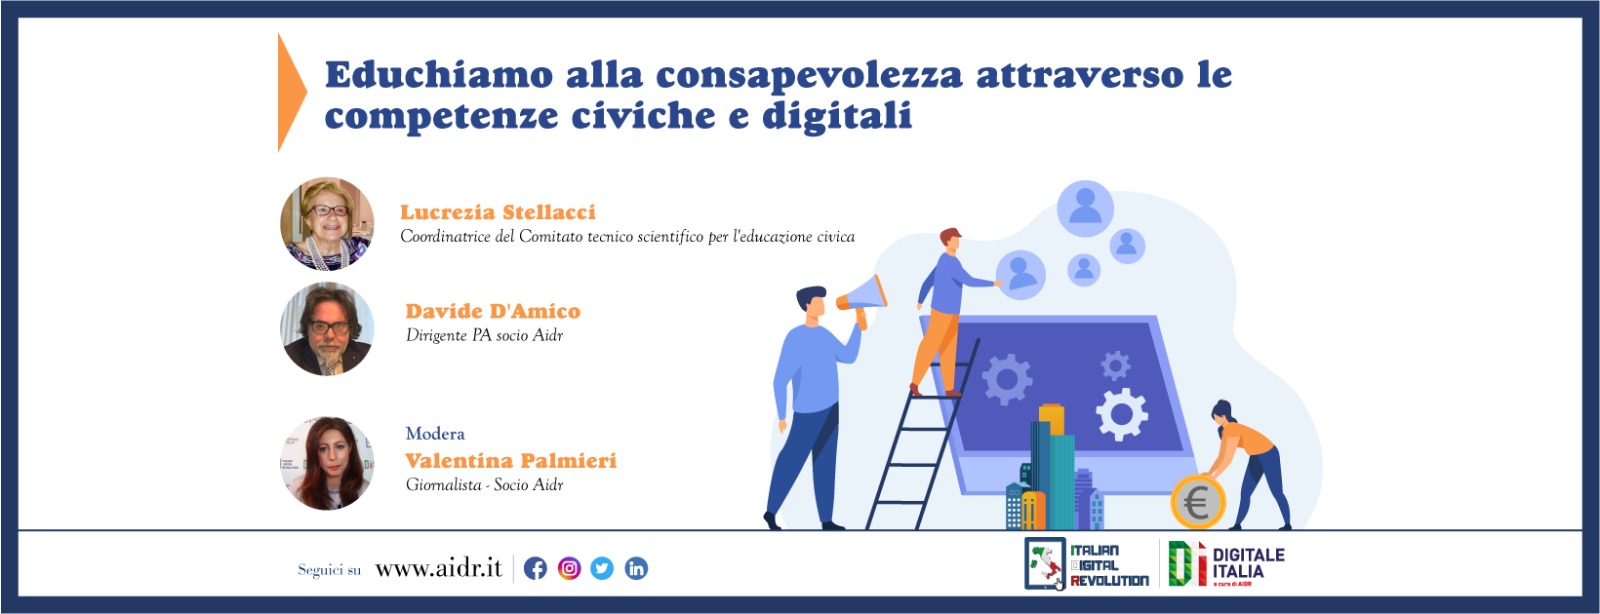 Educazione civica e digitale, approfondimento a Digitale Italia